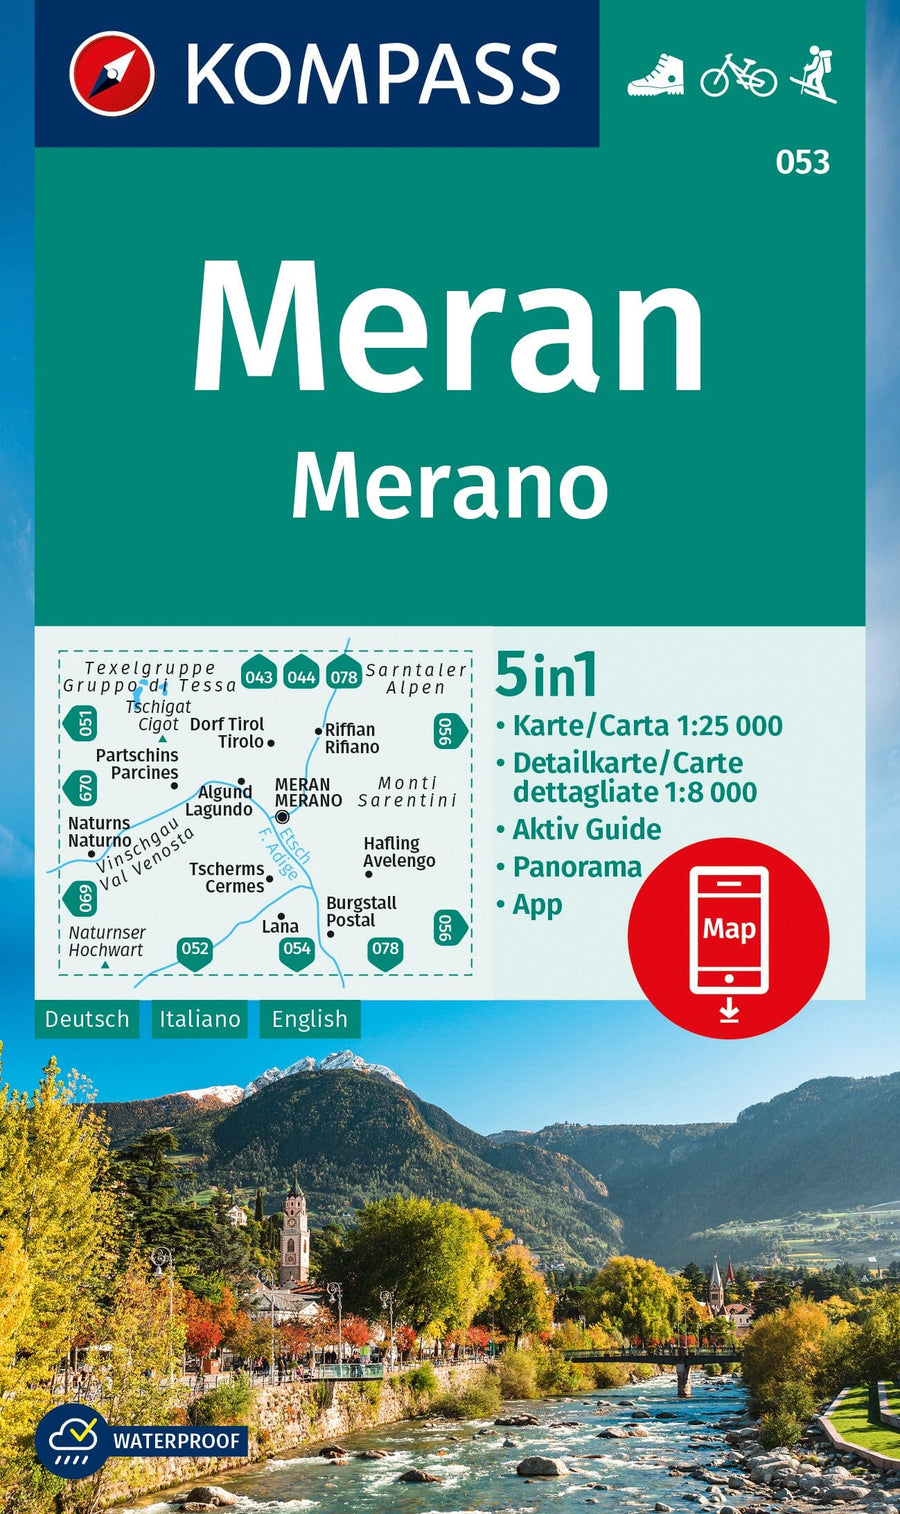 Carte de randonnée n° 054 - Lana, Etschtal, Lana, Val d'Adige